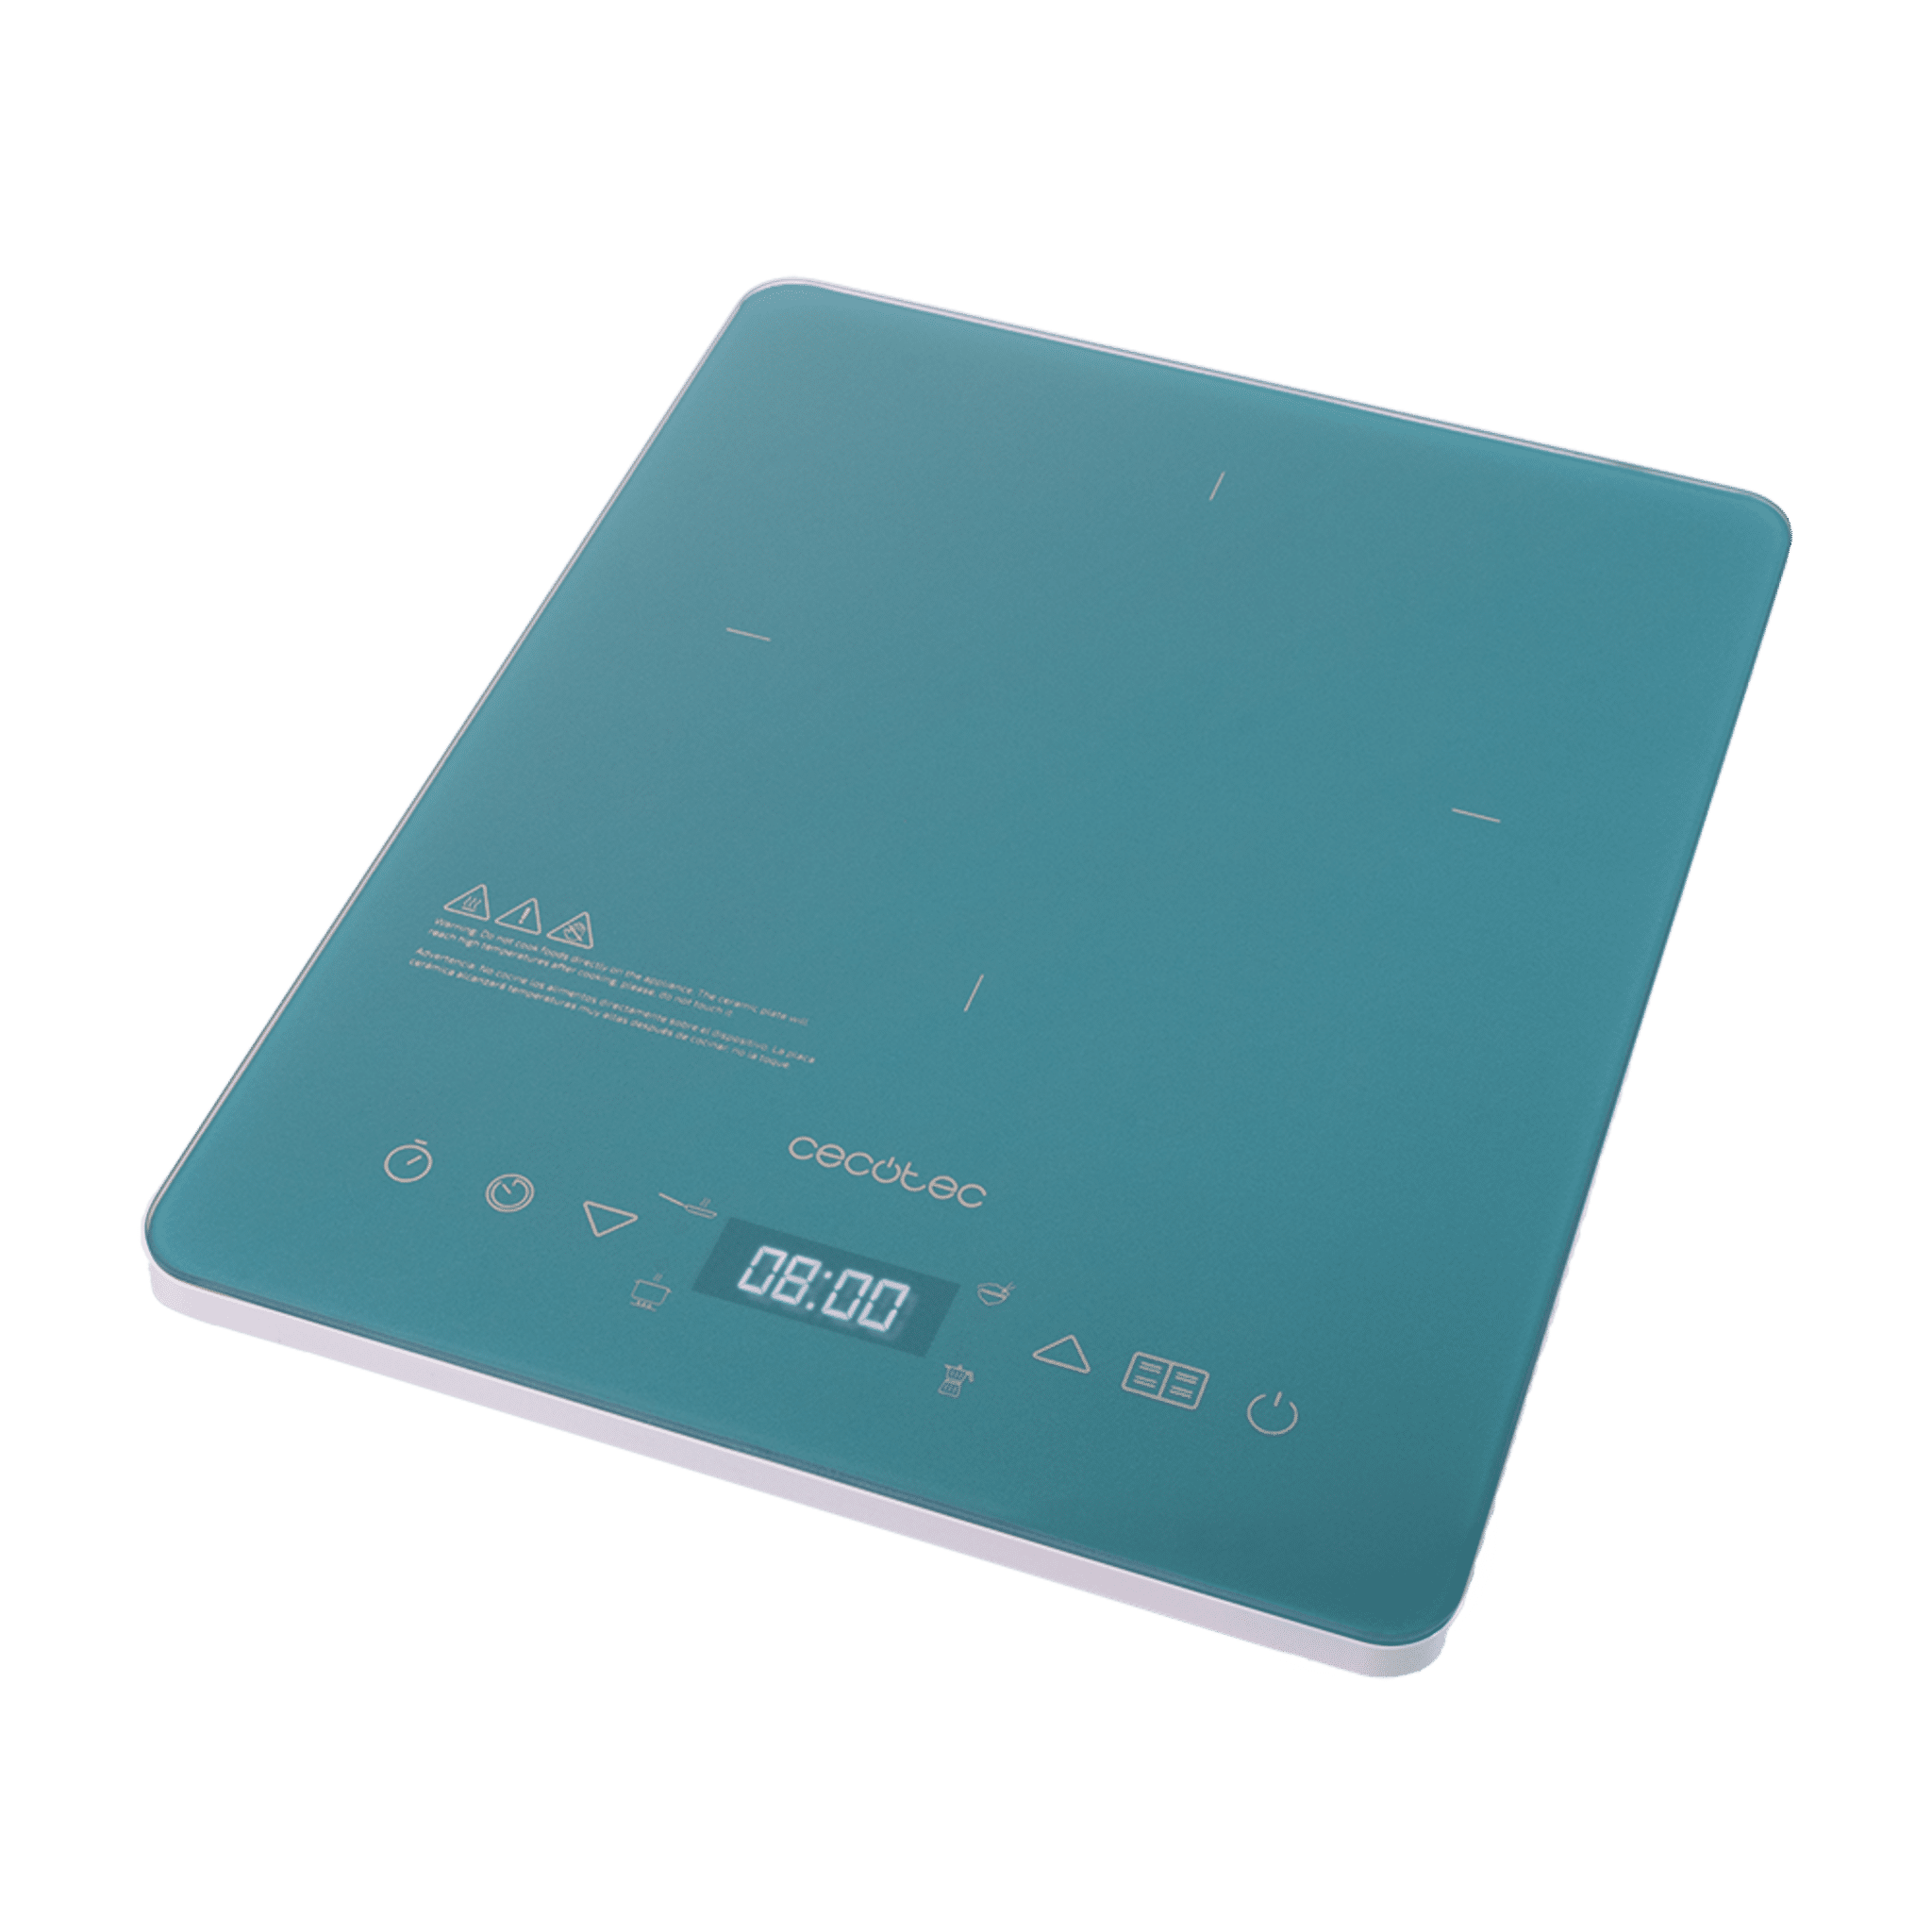 Placa de inducción portátil Full Crystal Sky. 2000 W, Potencia y Temperatura regulable, 4 programas preconfigurados, Temporizador, Sartenes hasta 28 cm